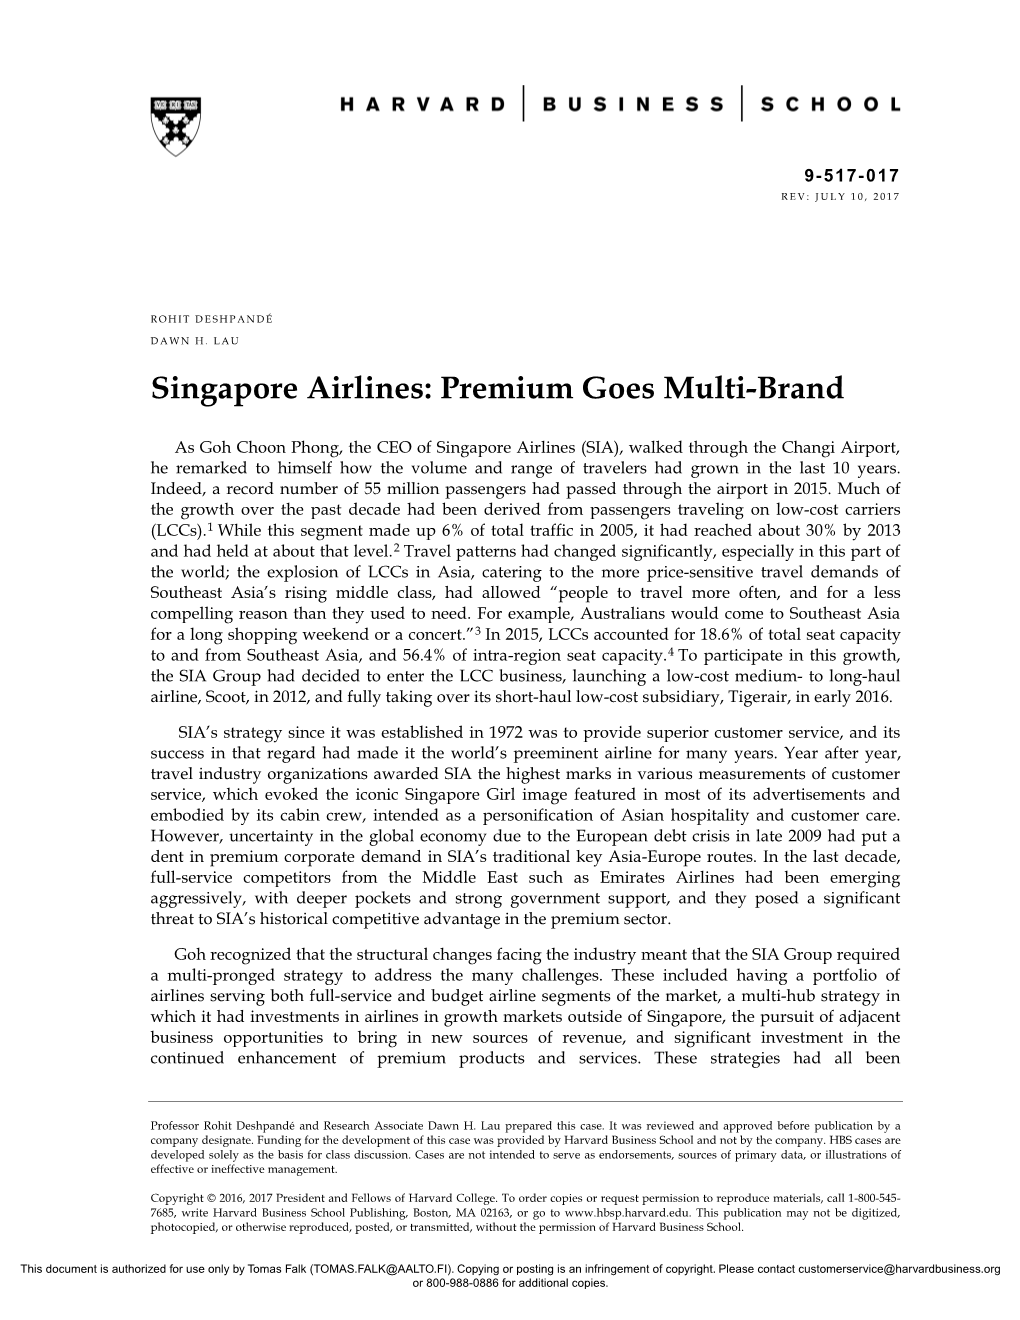 Singapore Airlines: Premium Goes Multi-Brand